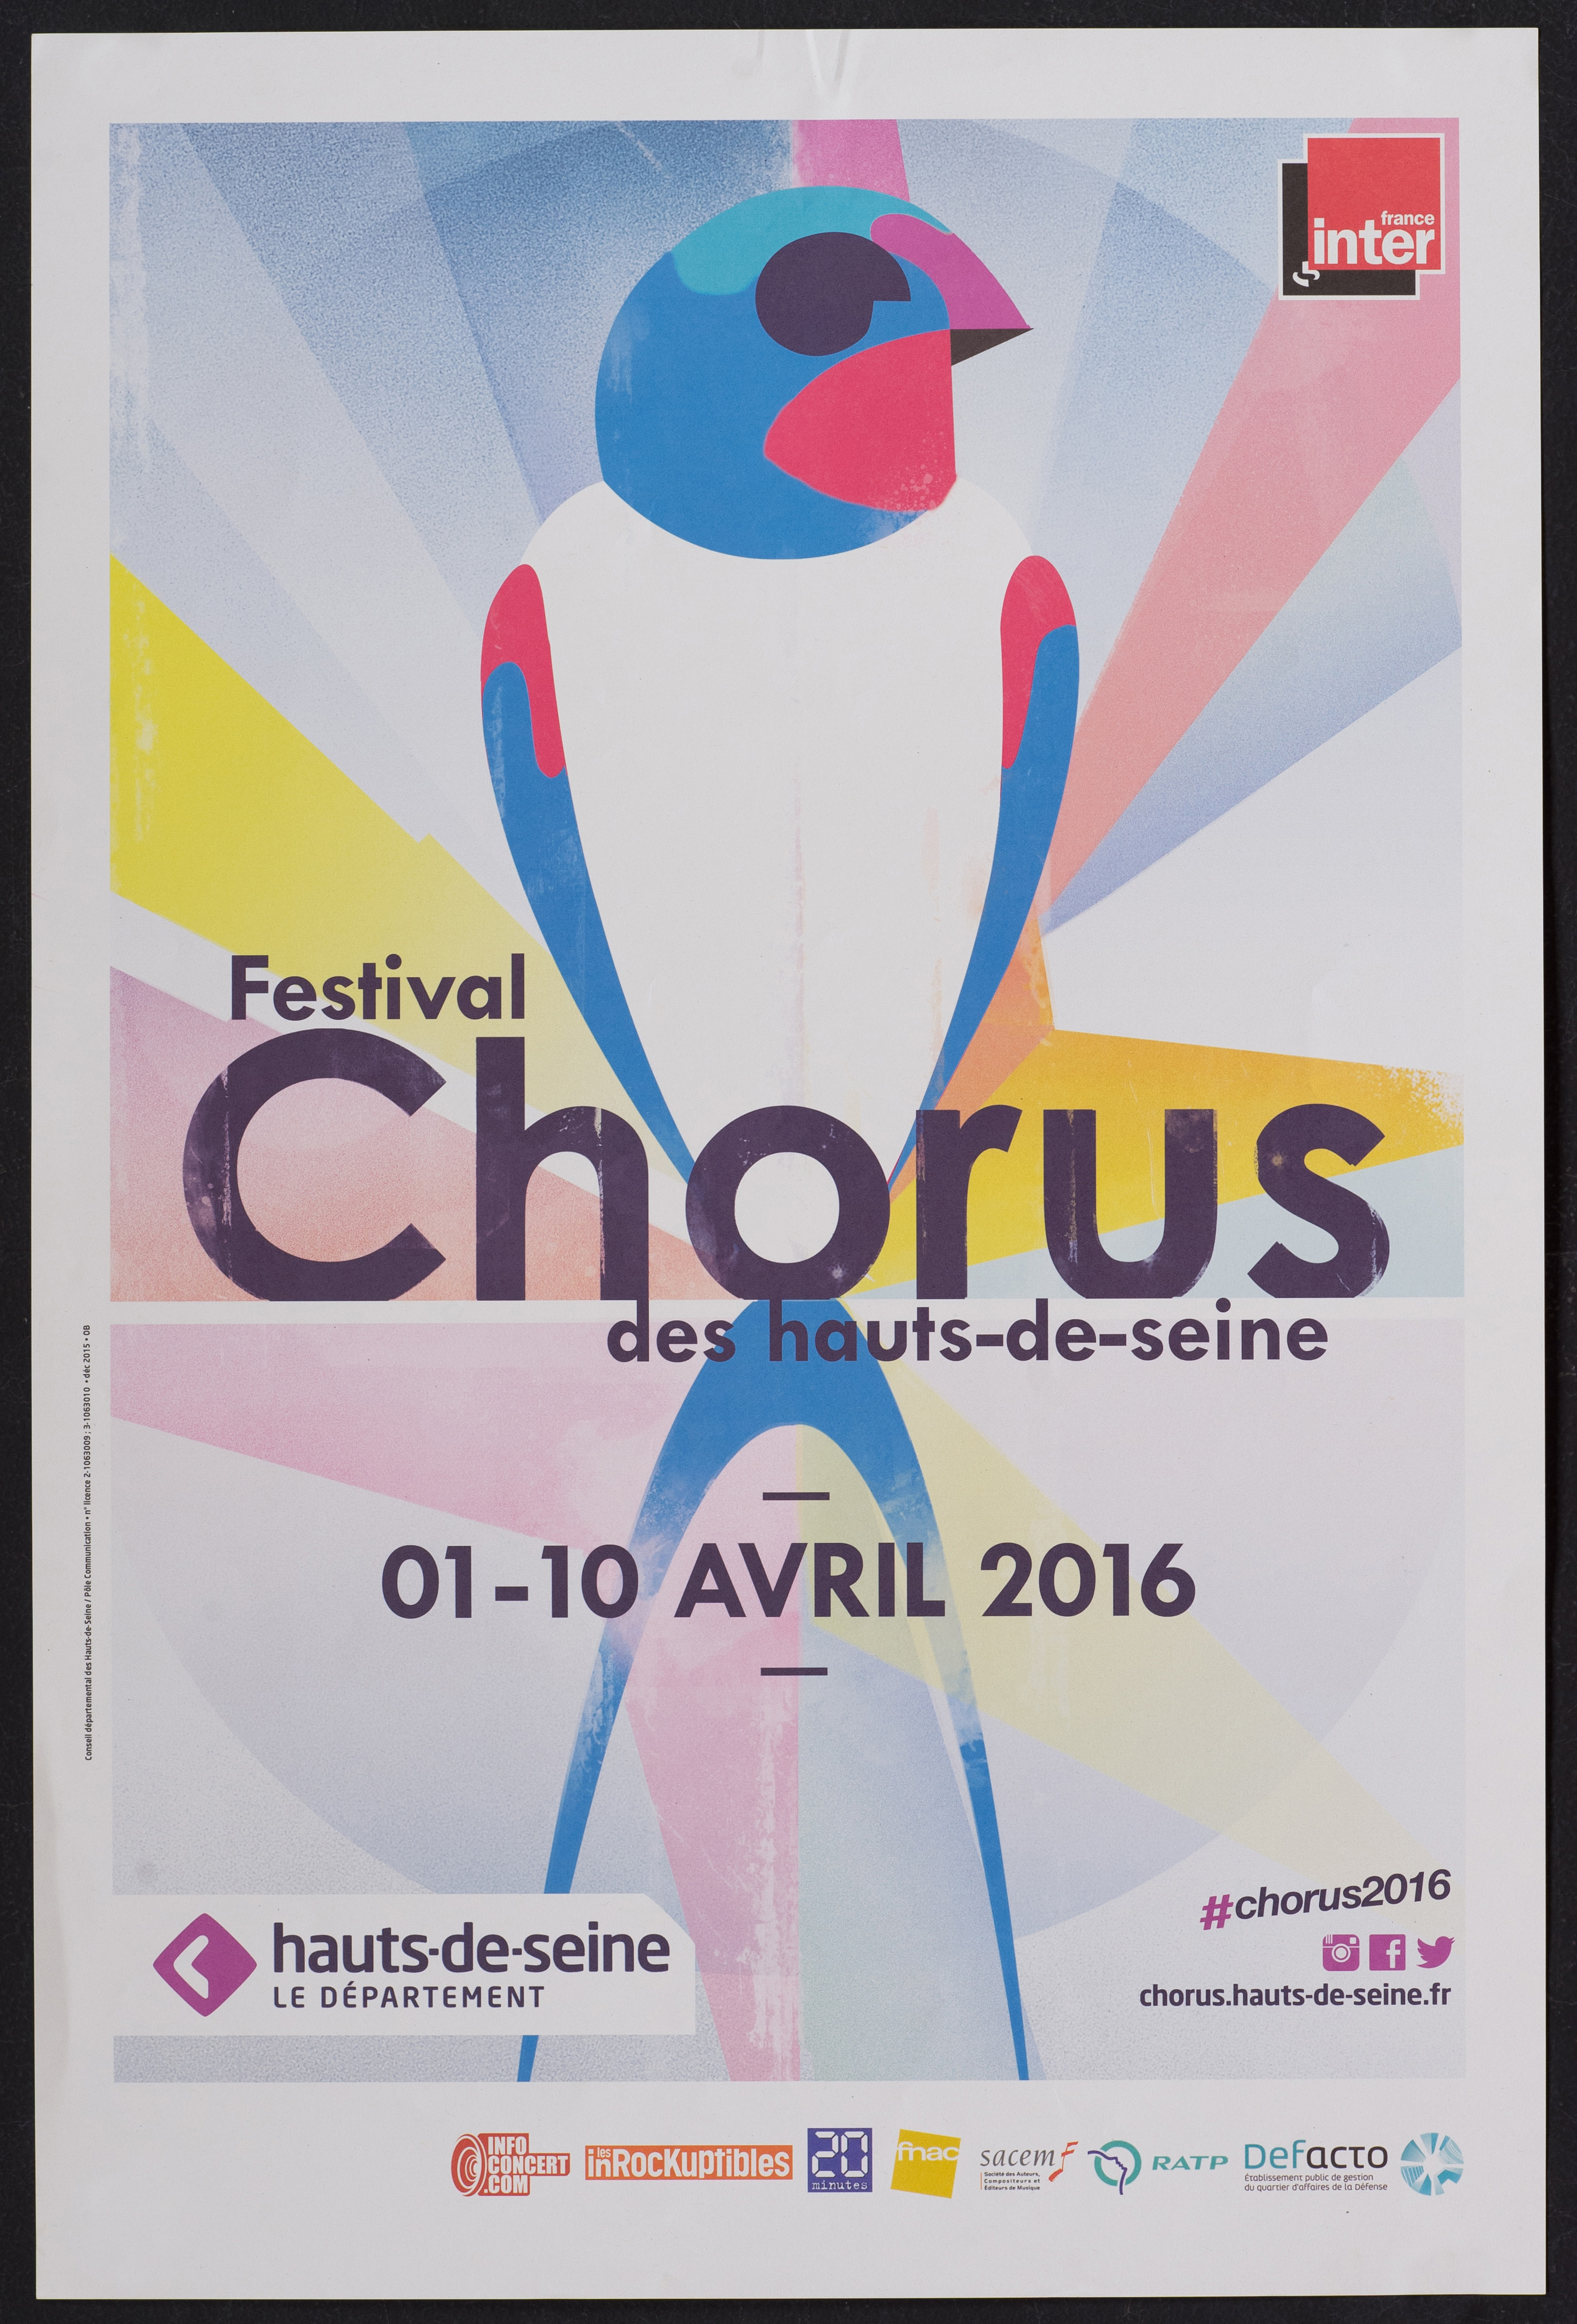 Festival chorus des Hauts-de-Seine 1-10 avril 2016. - Conseil Départemental Hauts-de-Seine, 2015. - 1 affiche ill. coul., 60 x 40 cm.